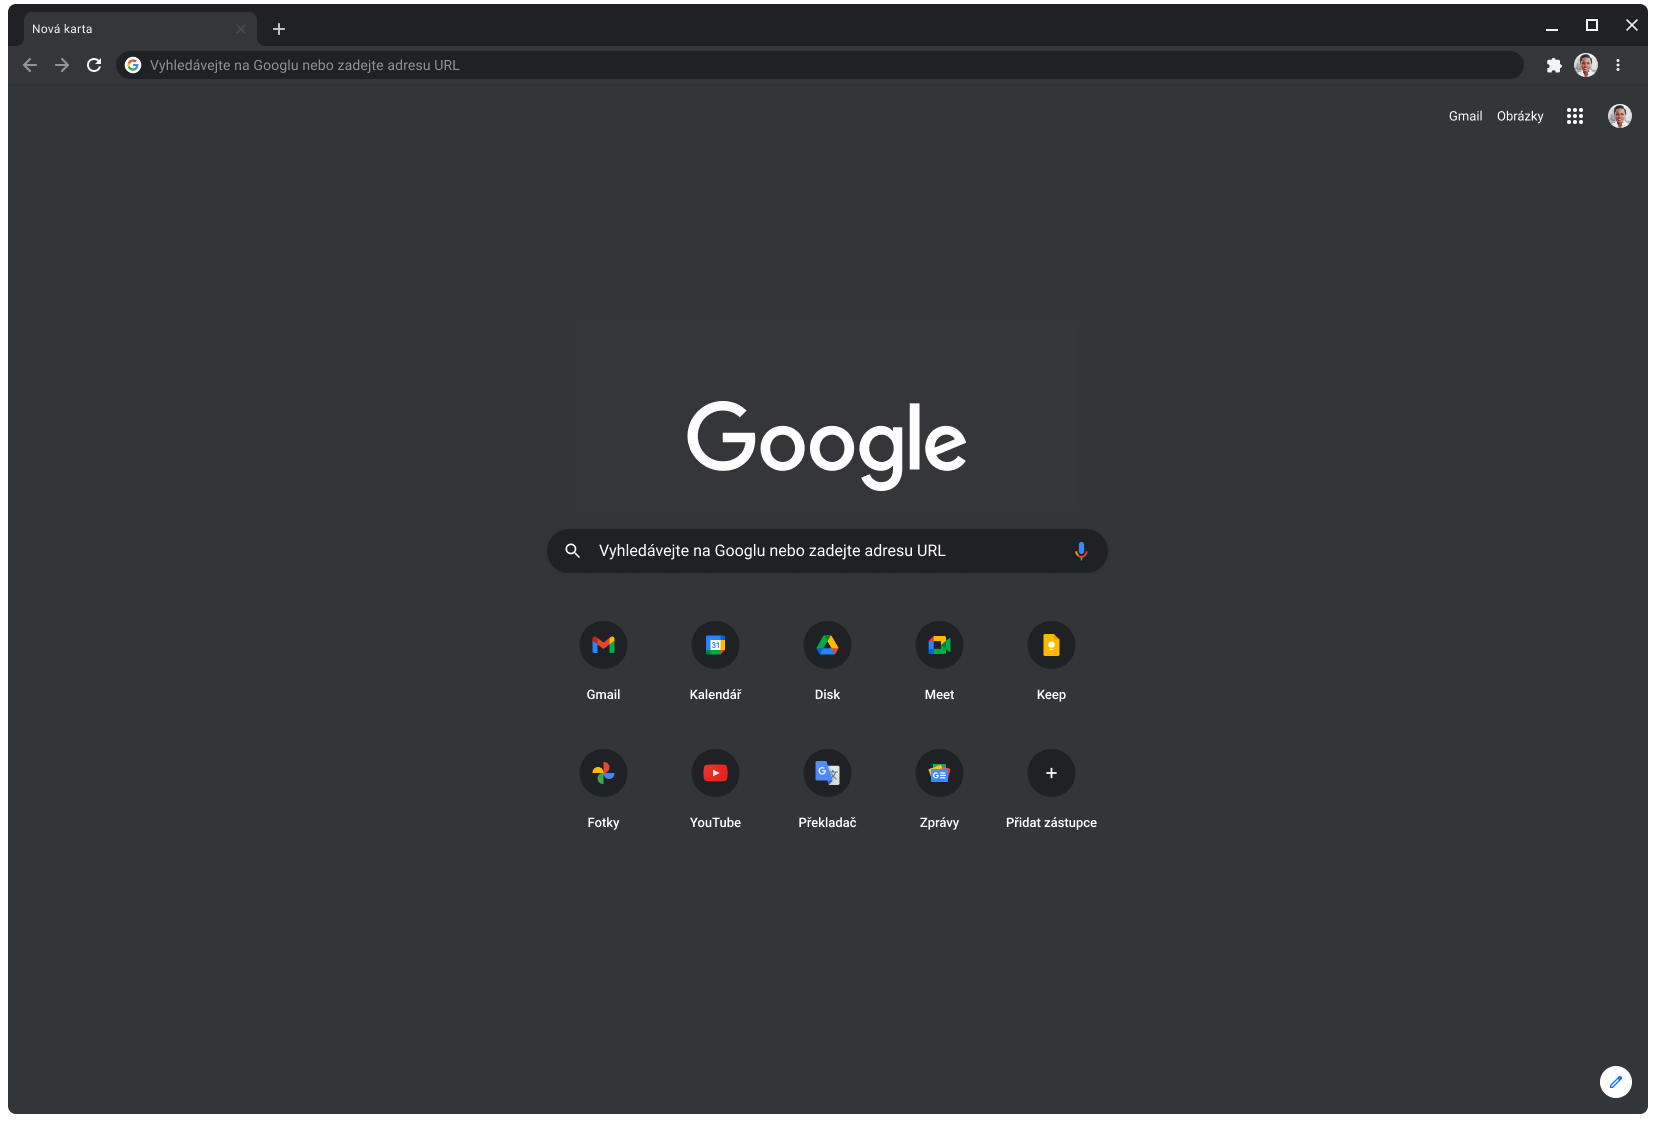 Okno prohlížeče Chrome v tmavém režimu s webem Google.com.